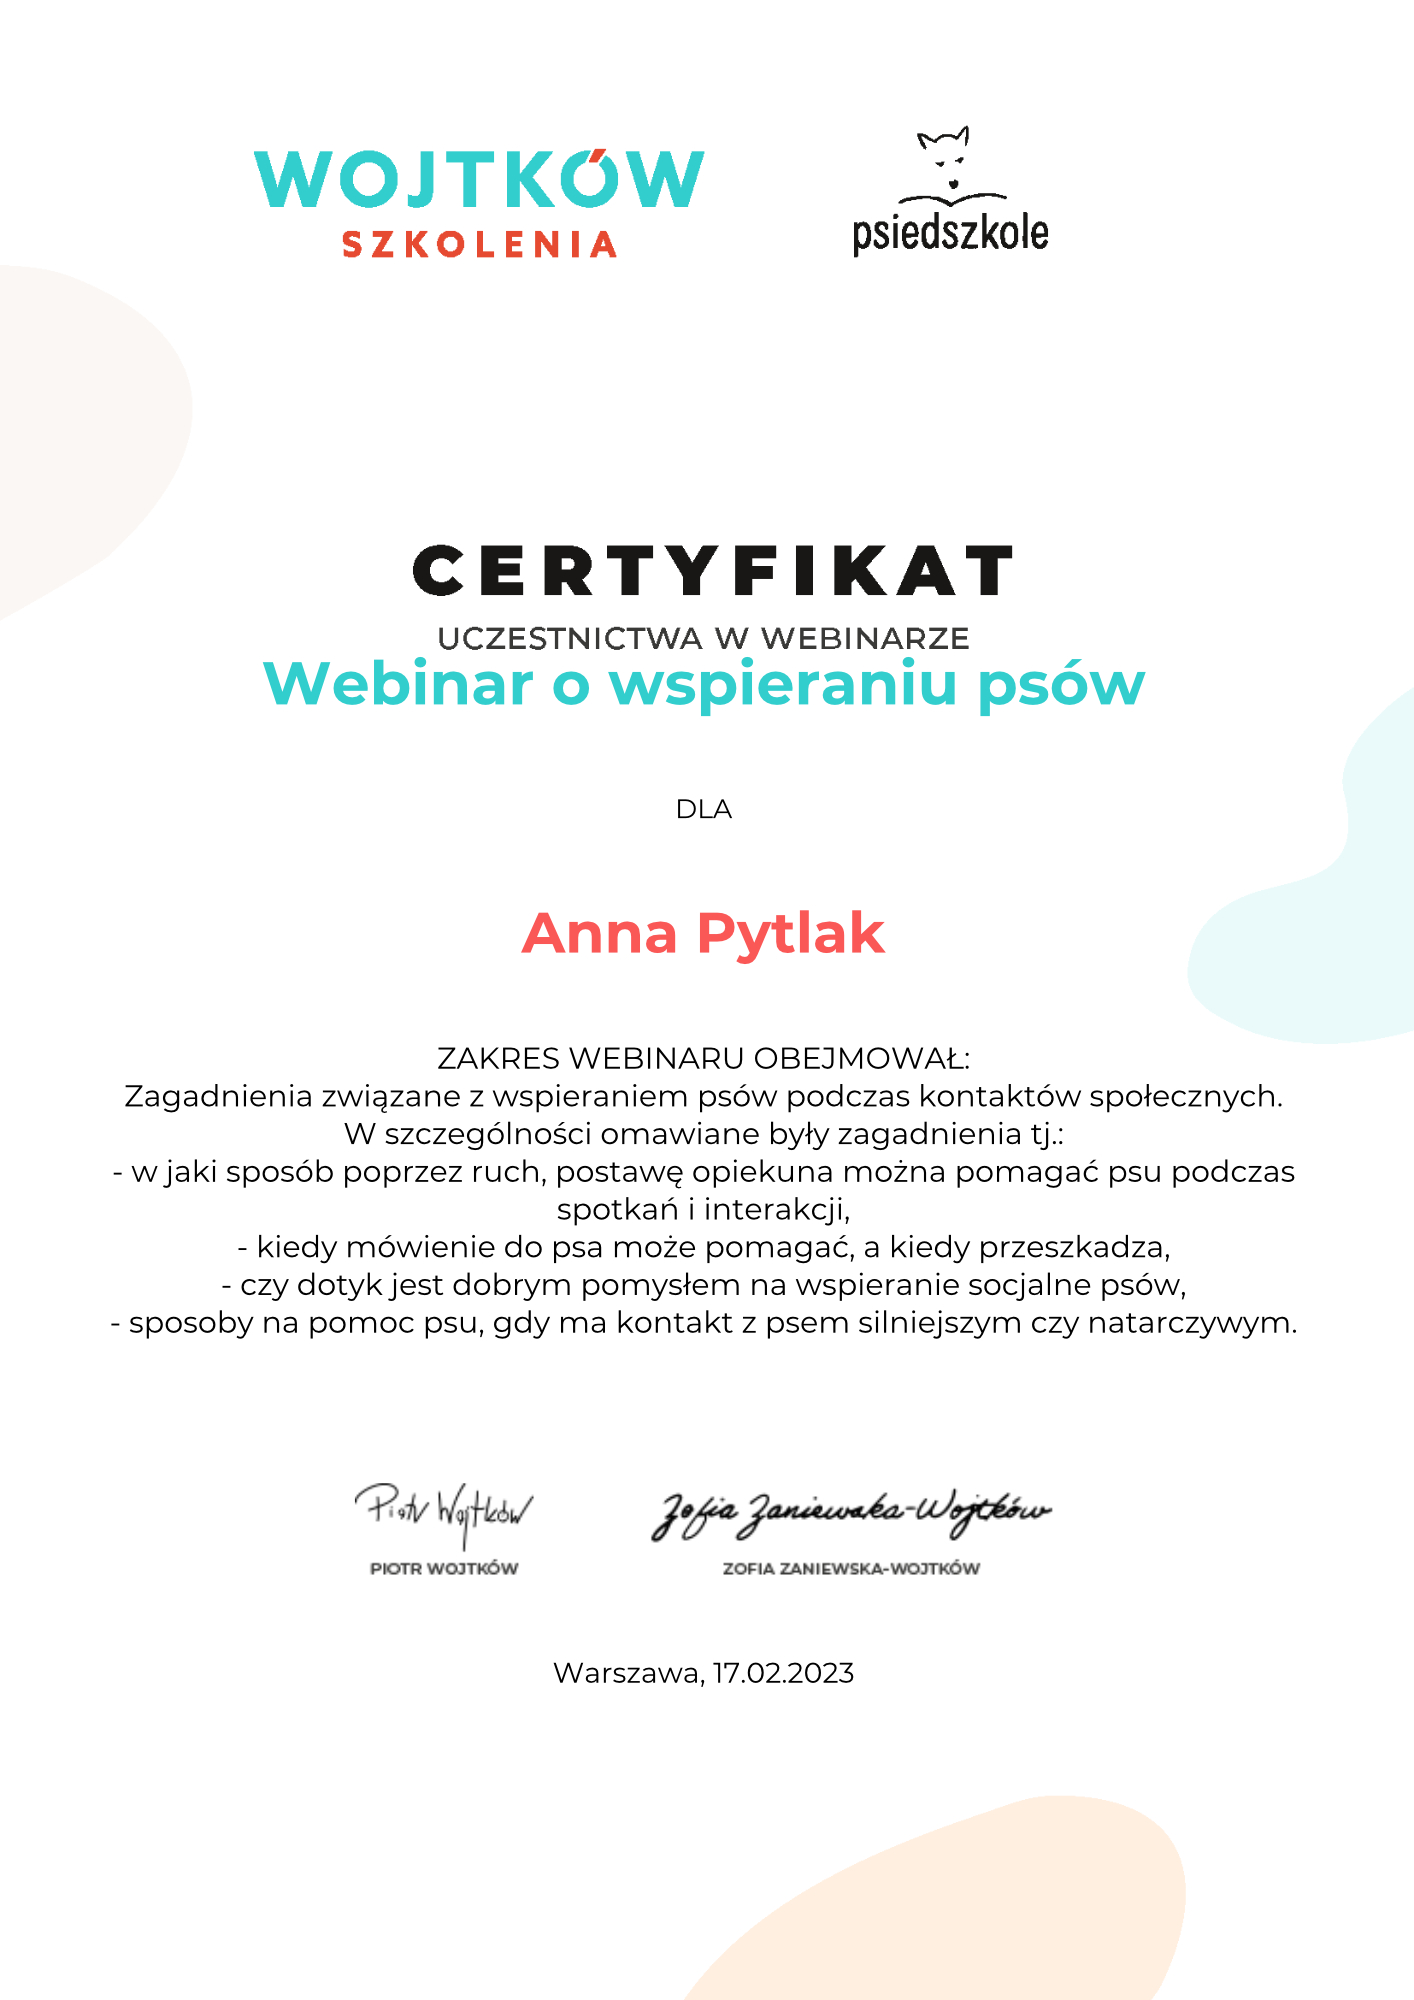 Anna-Pytlak-Webinar-o-wspieraniu-psow-Certyfikat-uczestnictwa-webinary-Wojtkow-Szkolenia